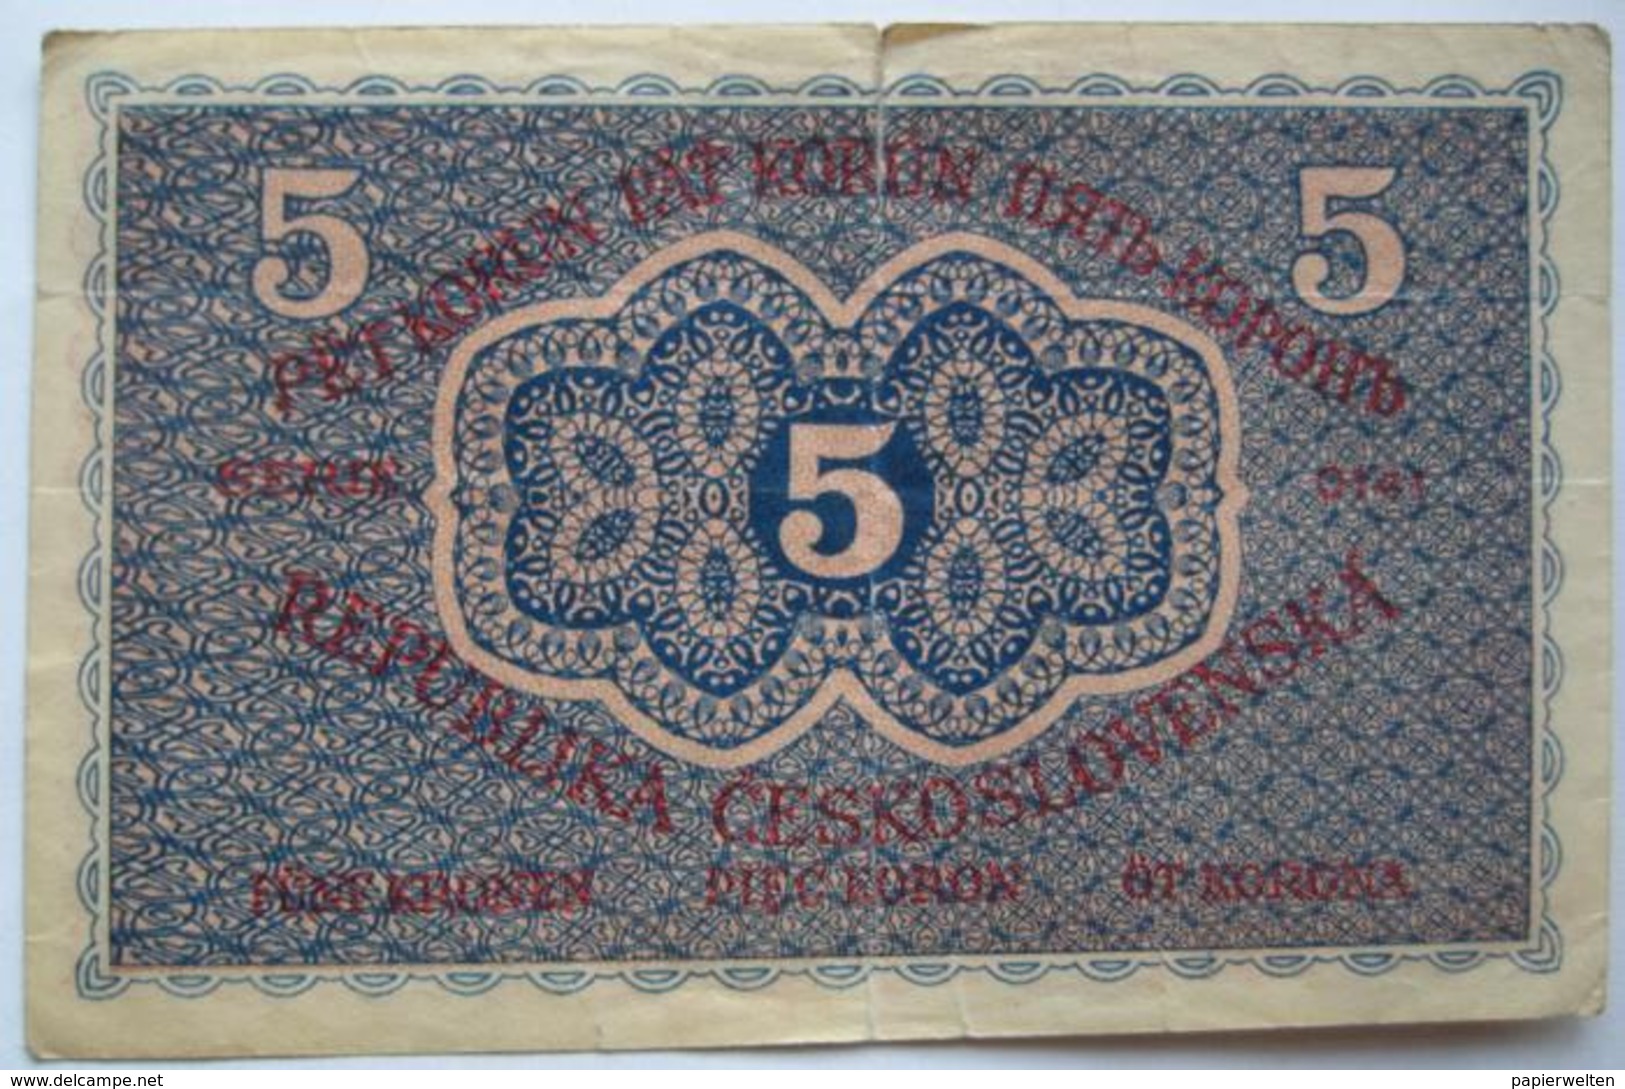 5 Kronen / Pet Korun 1919 (WPM 7) - Tschechoslowakei